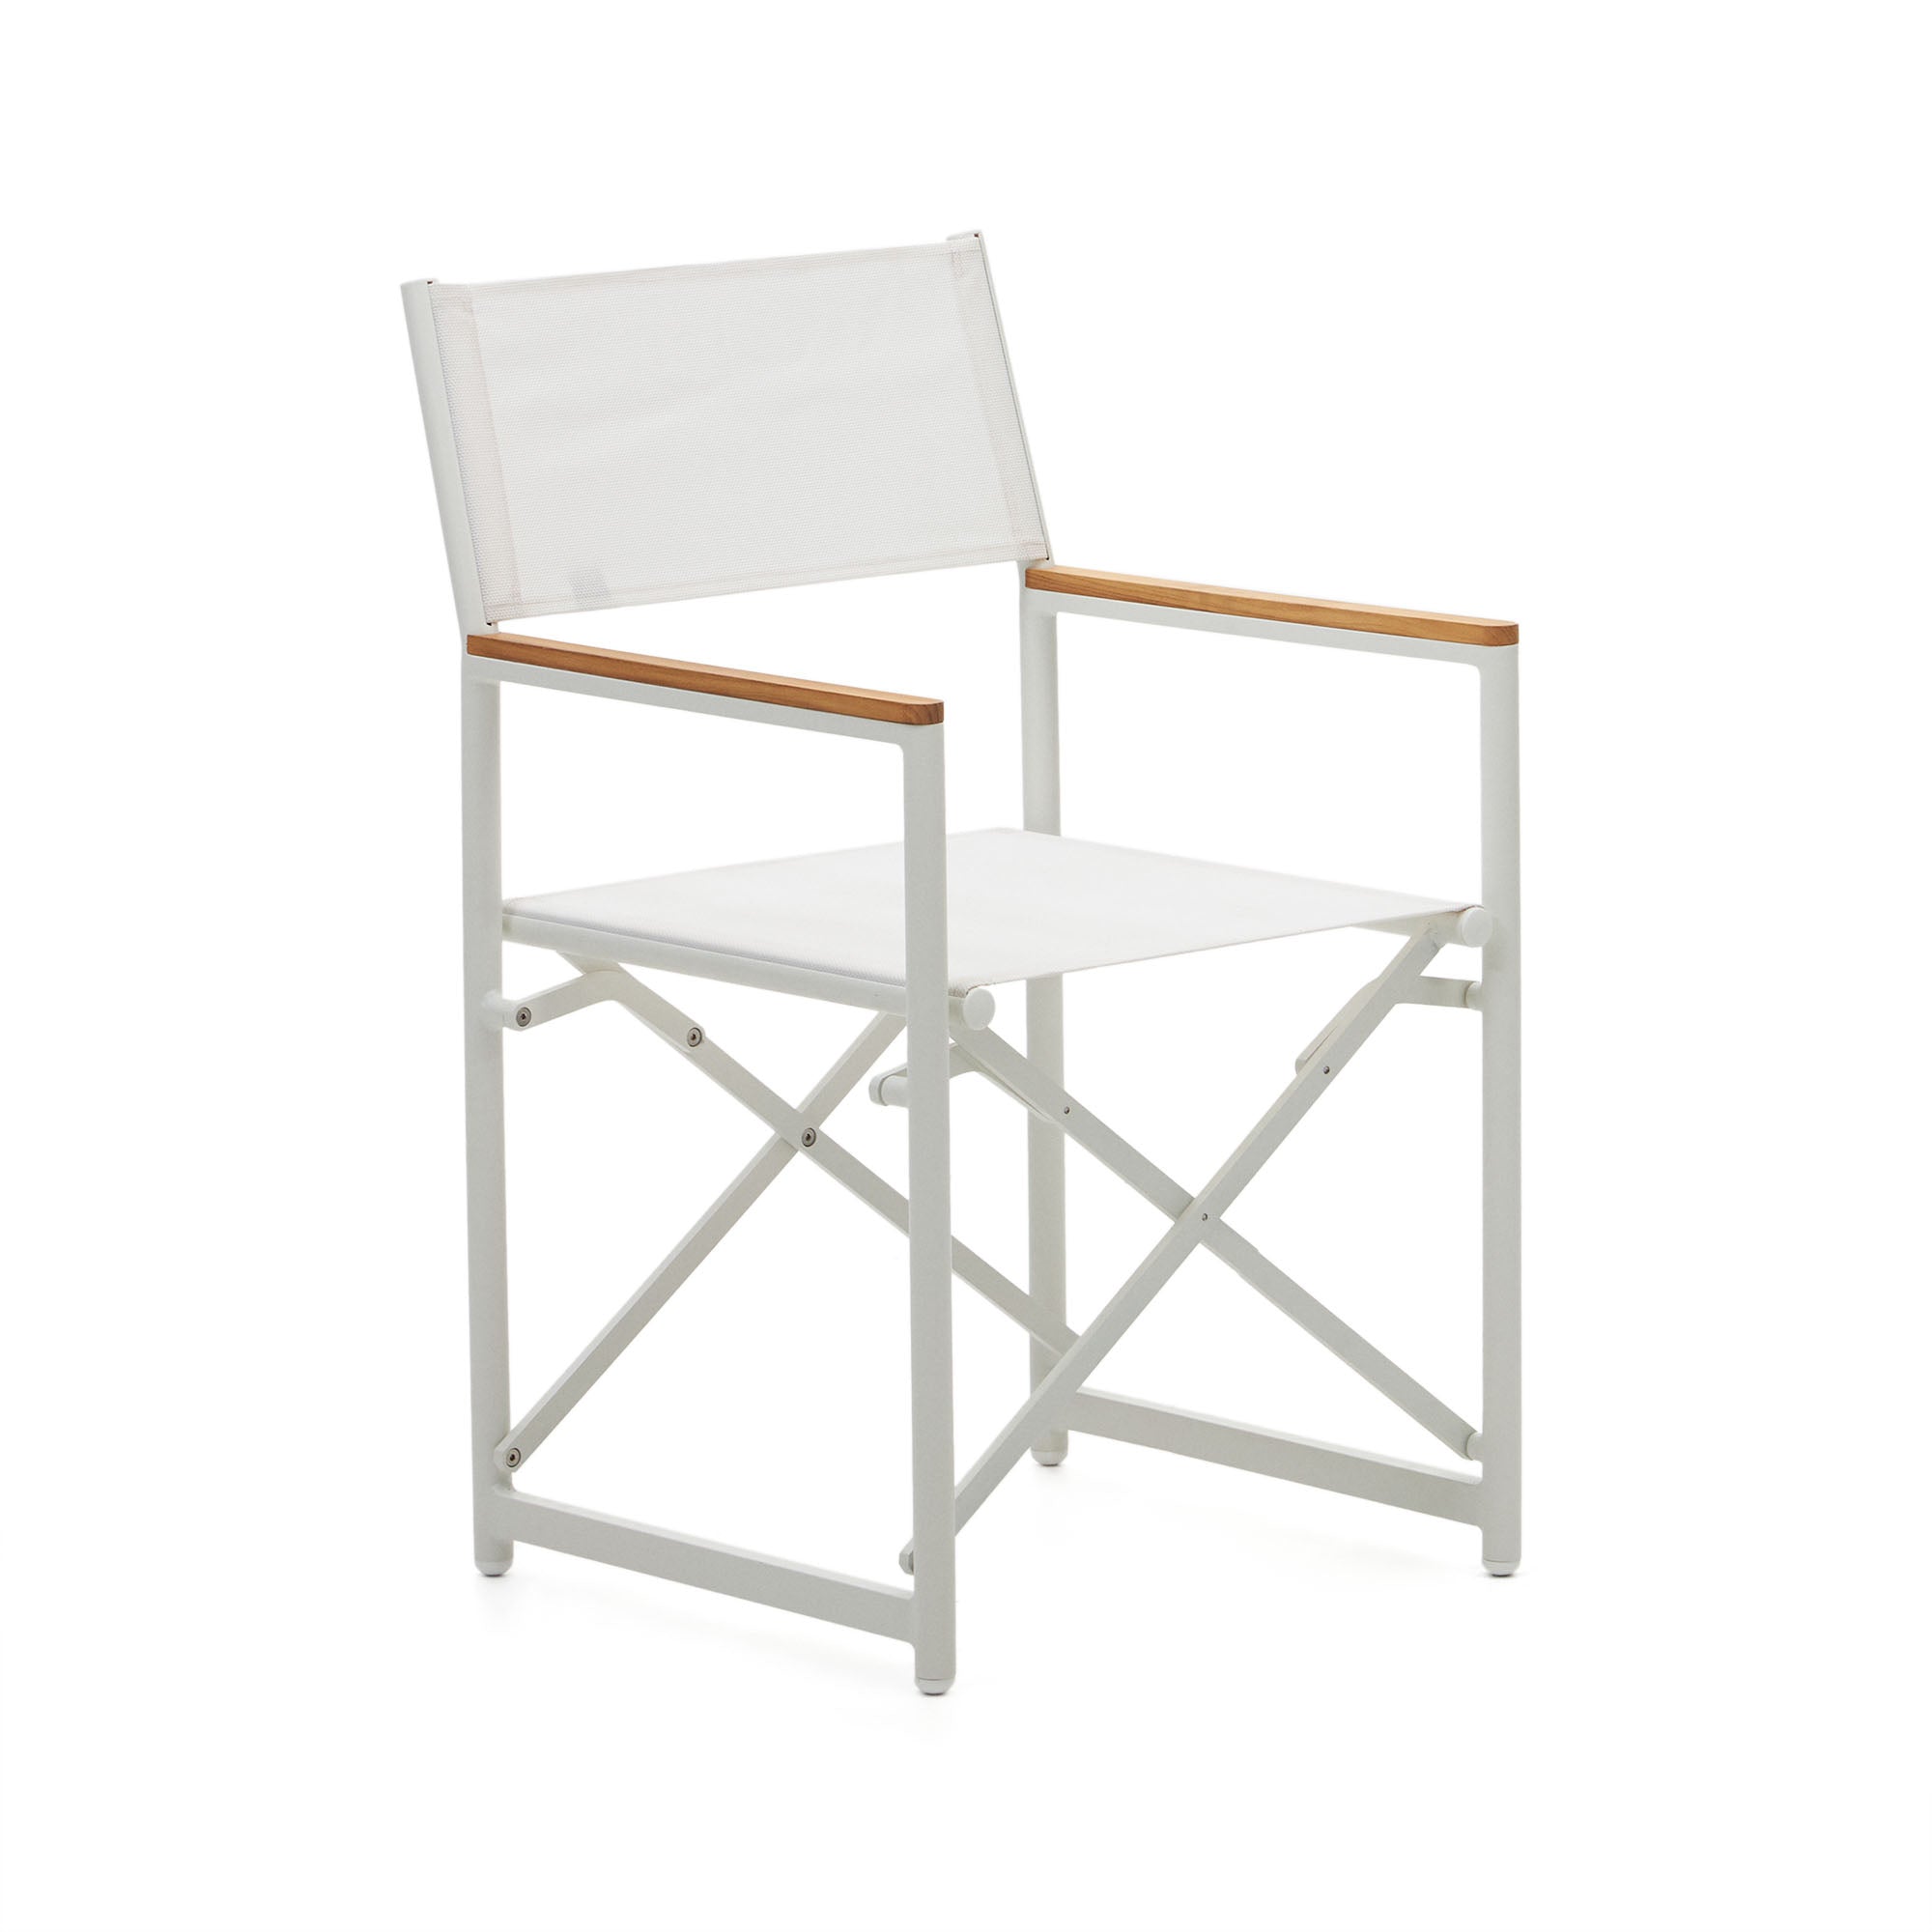 Llado fehér alumínium összecsukható szék tömör teakfa karfával 100% kültéri használatra alkalmas